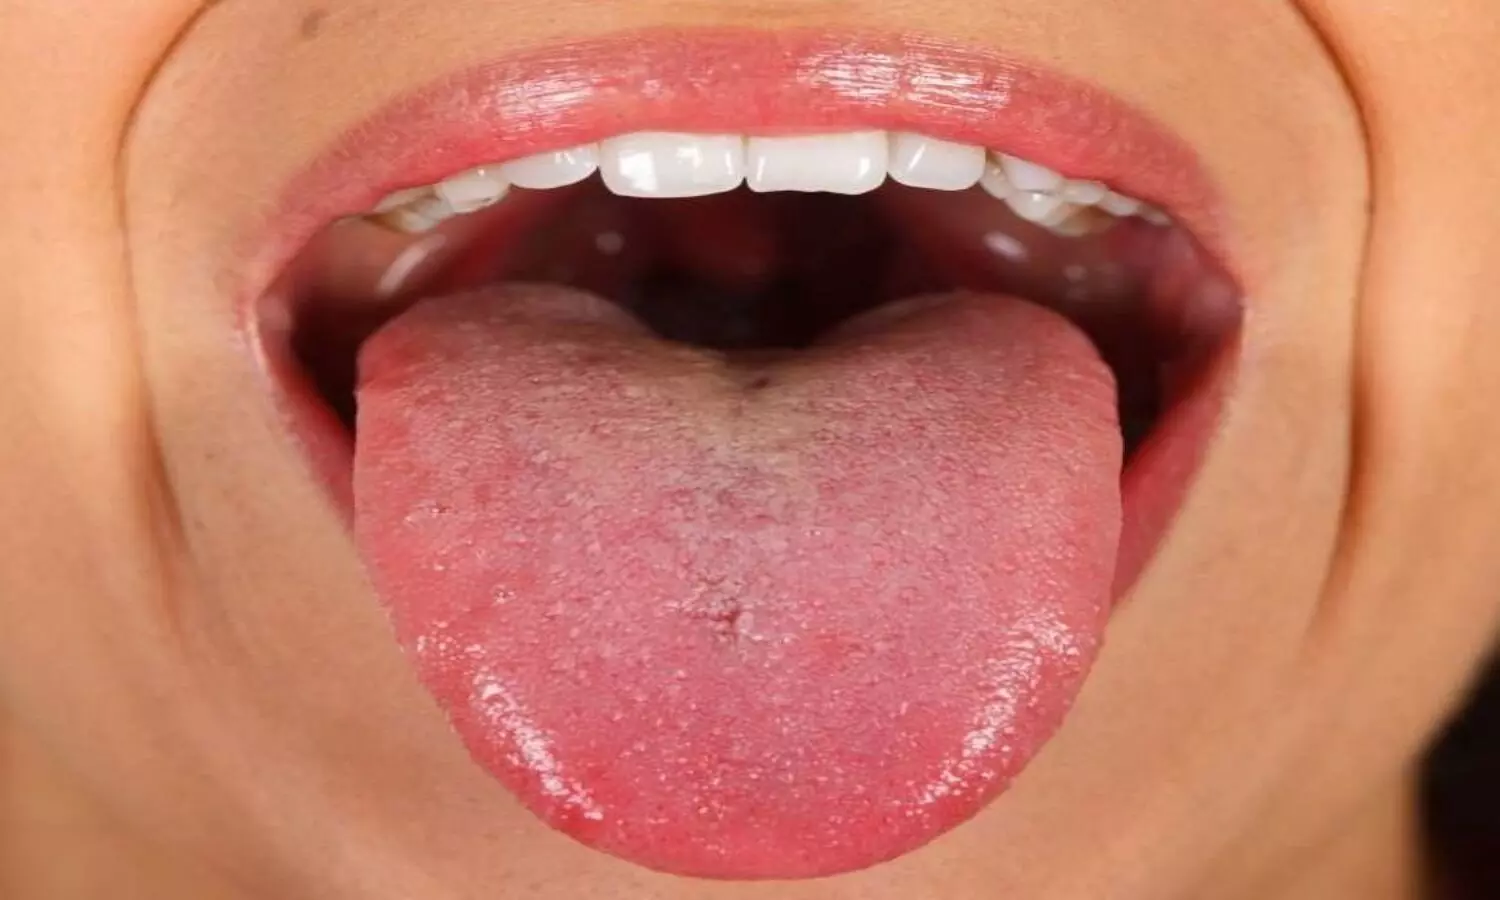 Tongue and bacteria